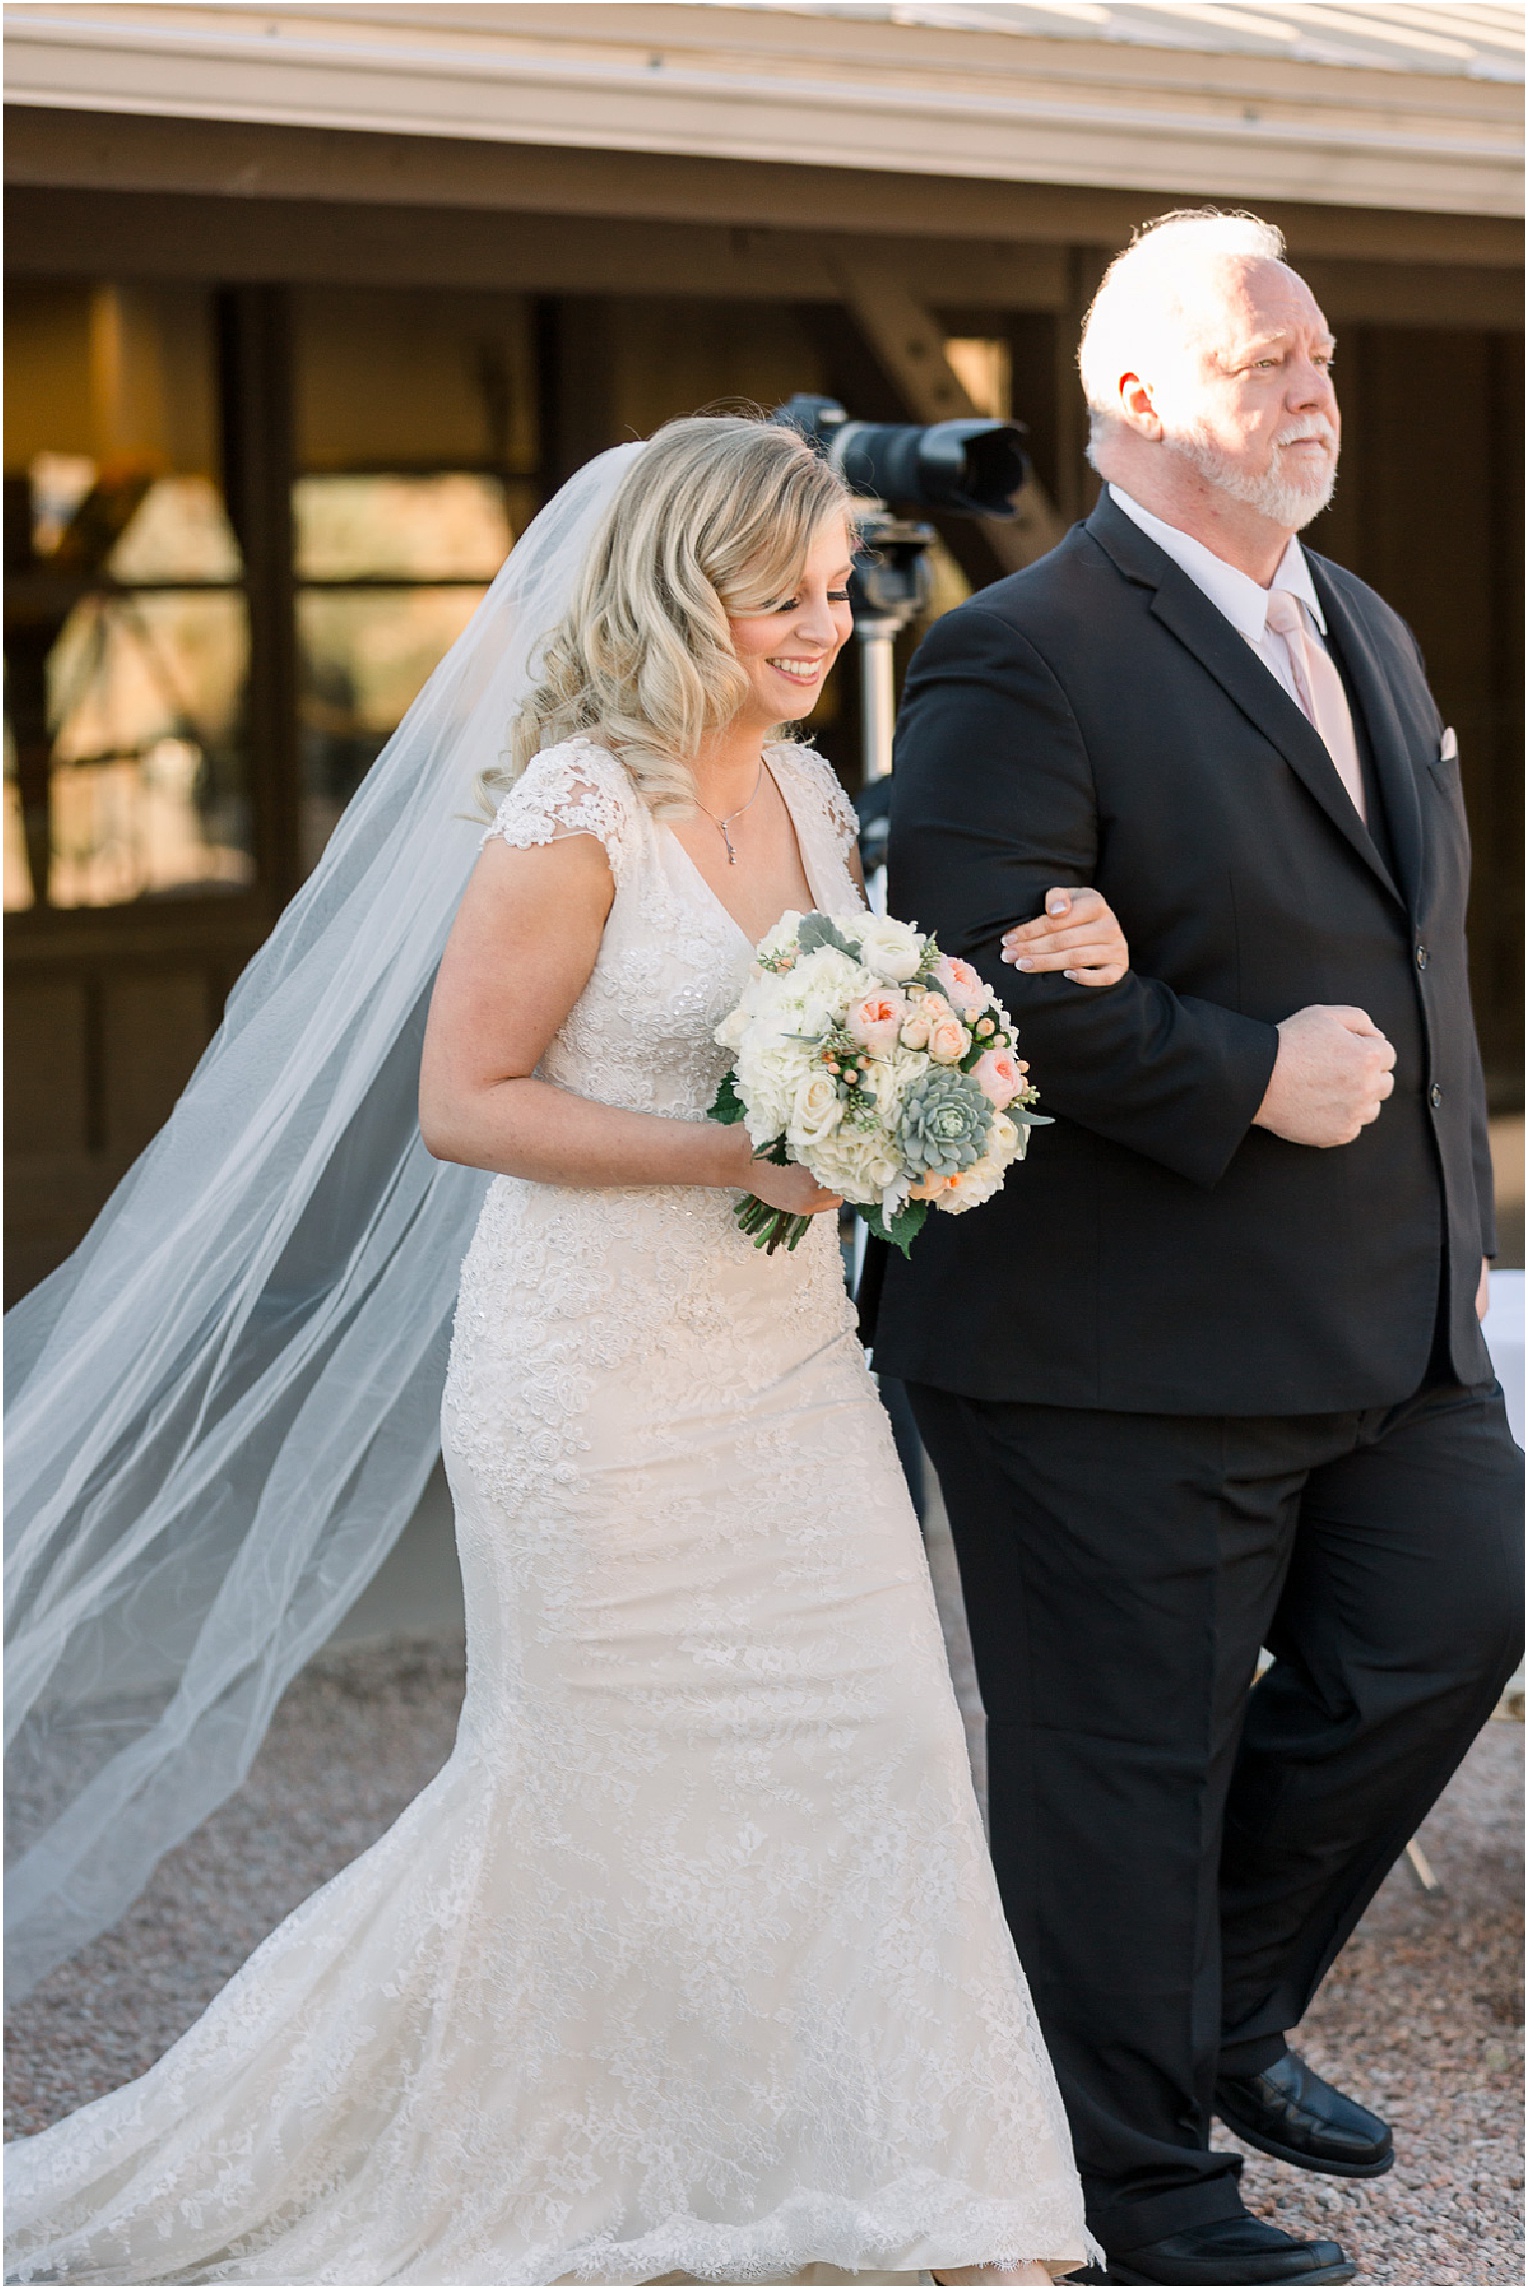 Annabelle + James Hilton El Conquistador Wedding outdoor wedding ceremony bride walking down the aisle